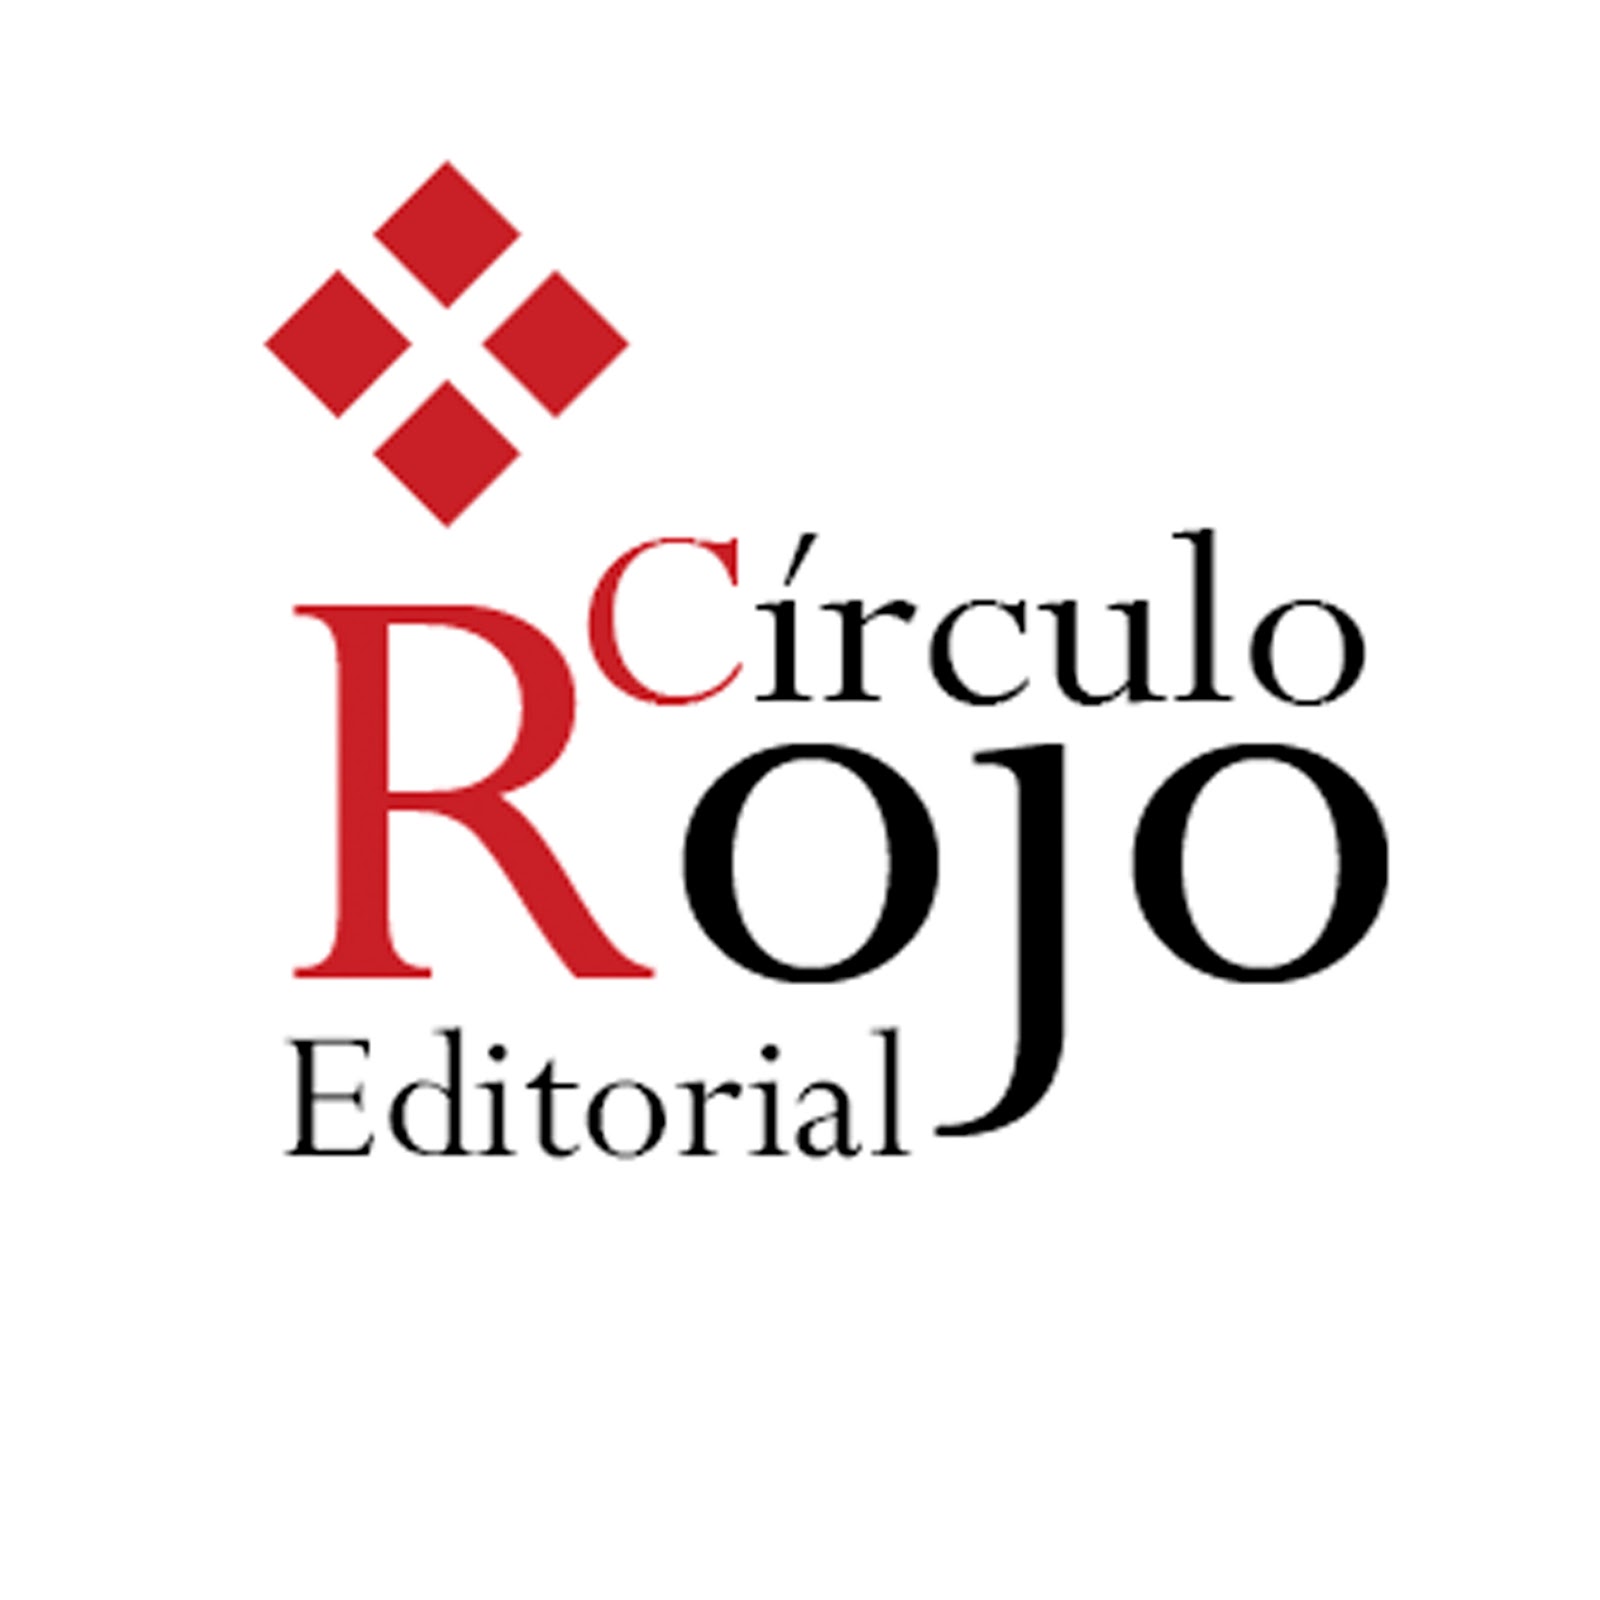 Circulo Rojo Editorial